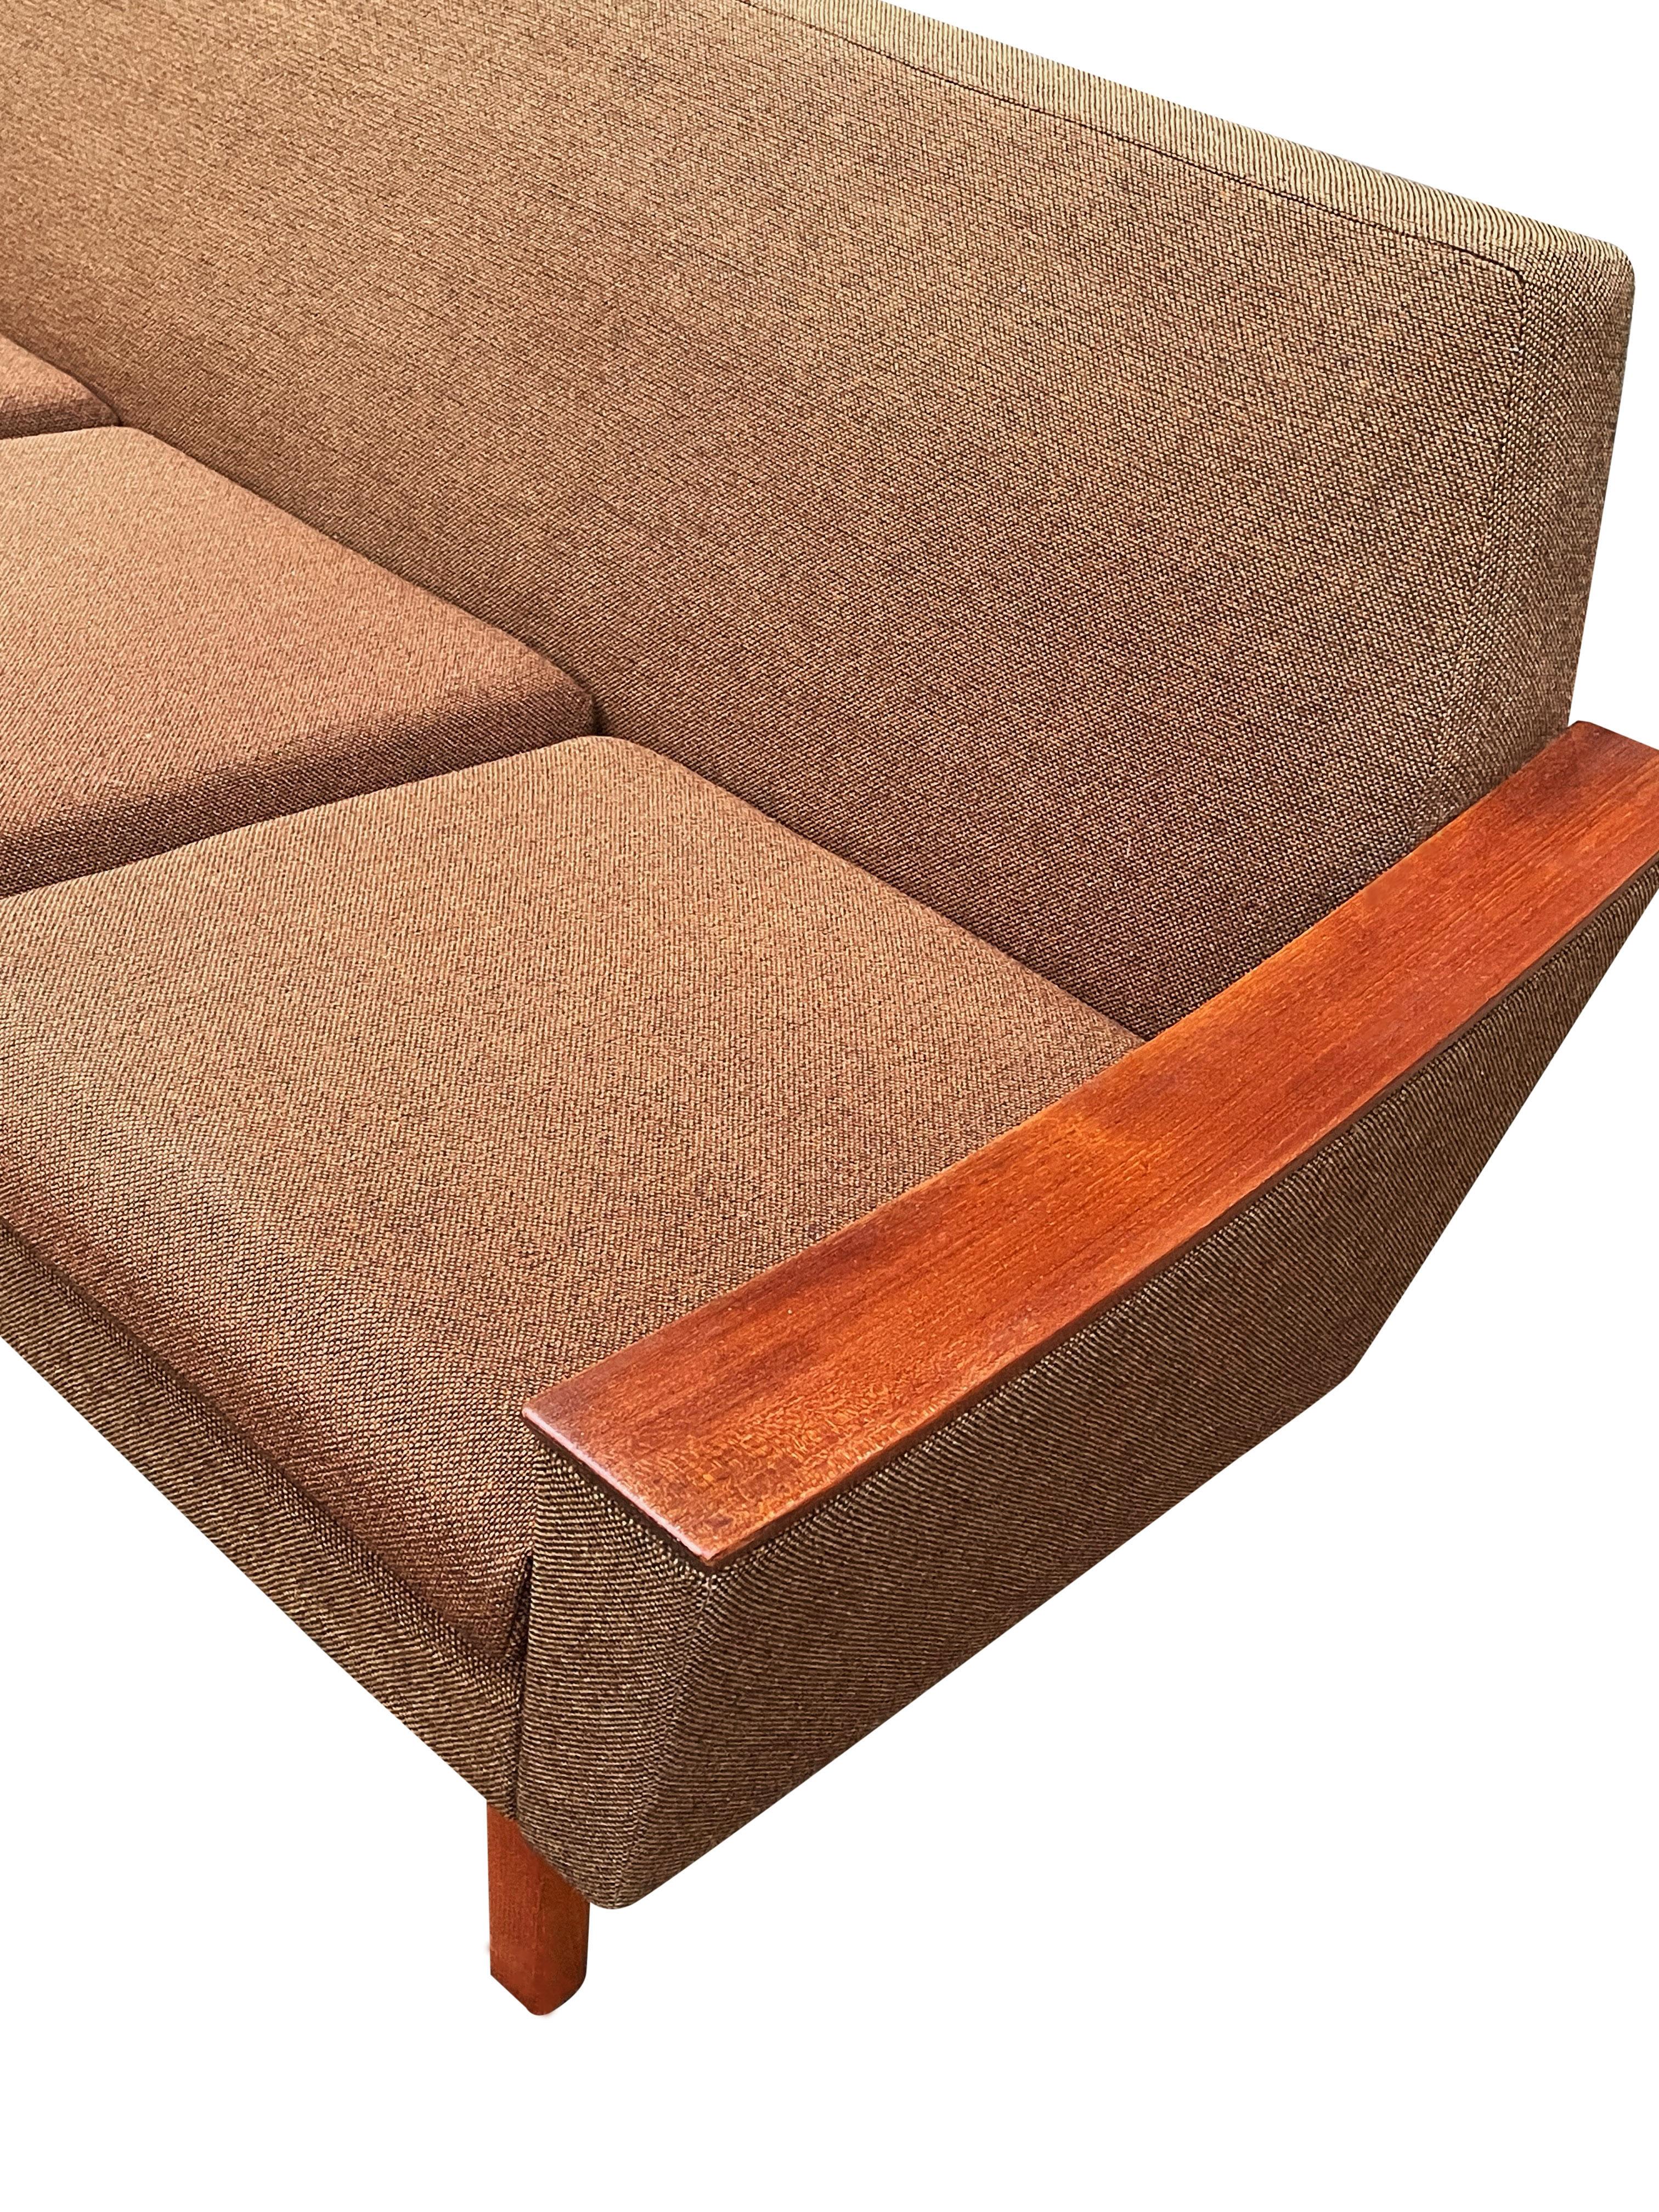 Midcentury Danish Modern Sofa in Teak by Oscar Langlo for Pi Langlos Fabrikker 2